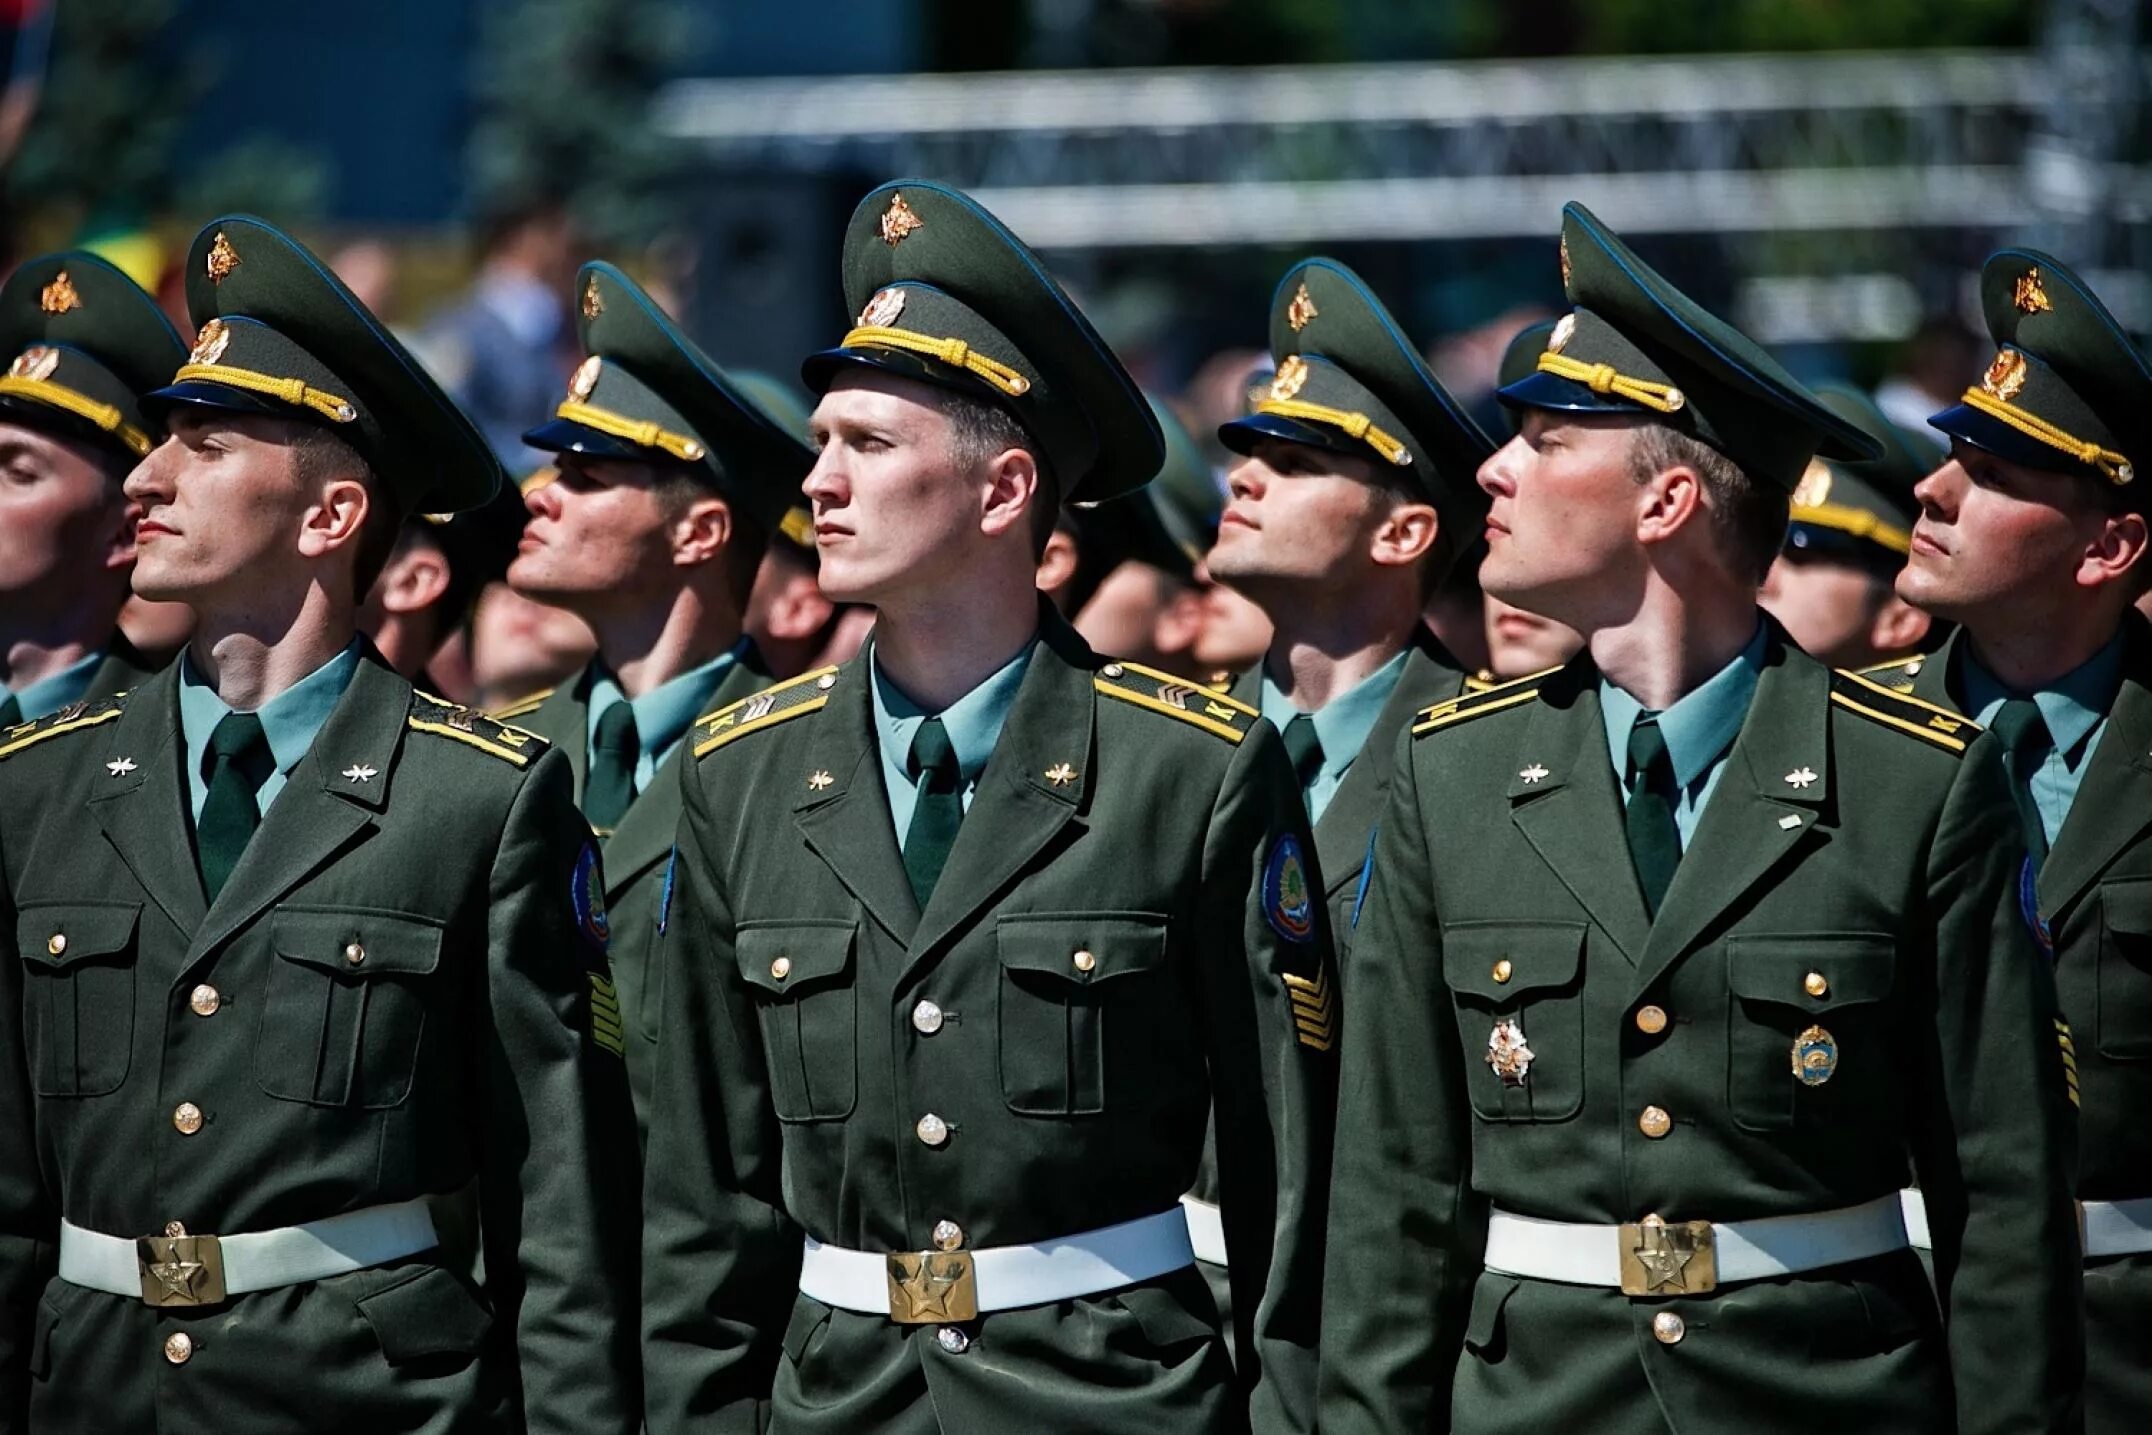 Парадная форма российских вооруженных сил. Военная форма. Военные курсанты. Форма курсантов. Солдат в парадной форме.